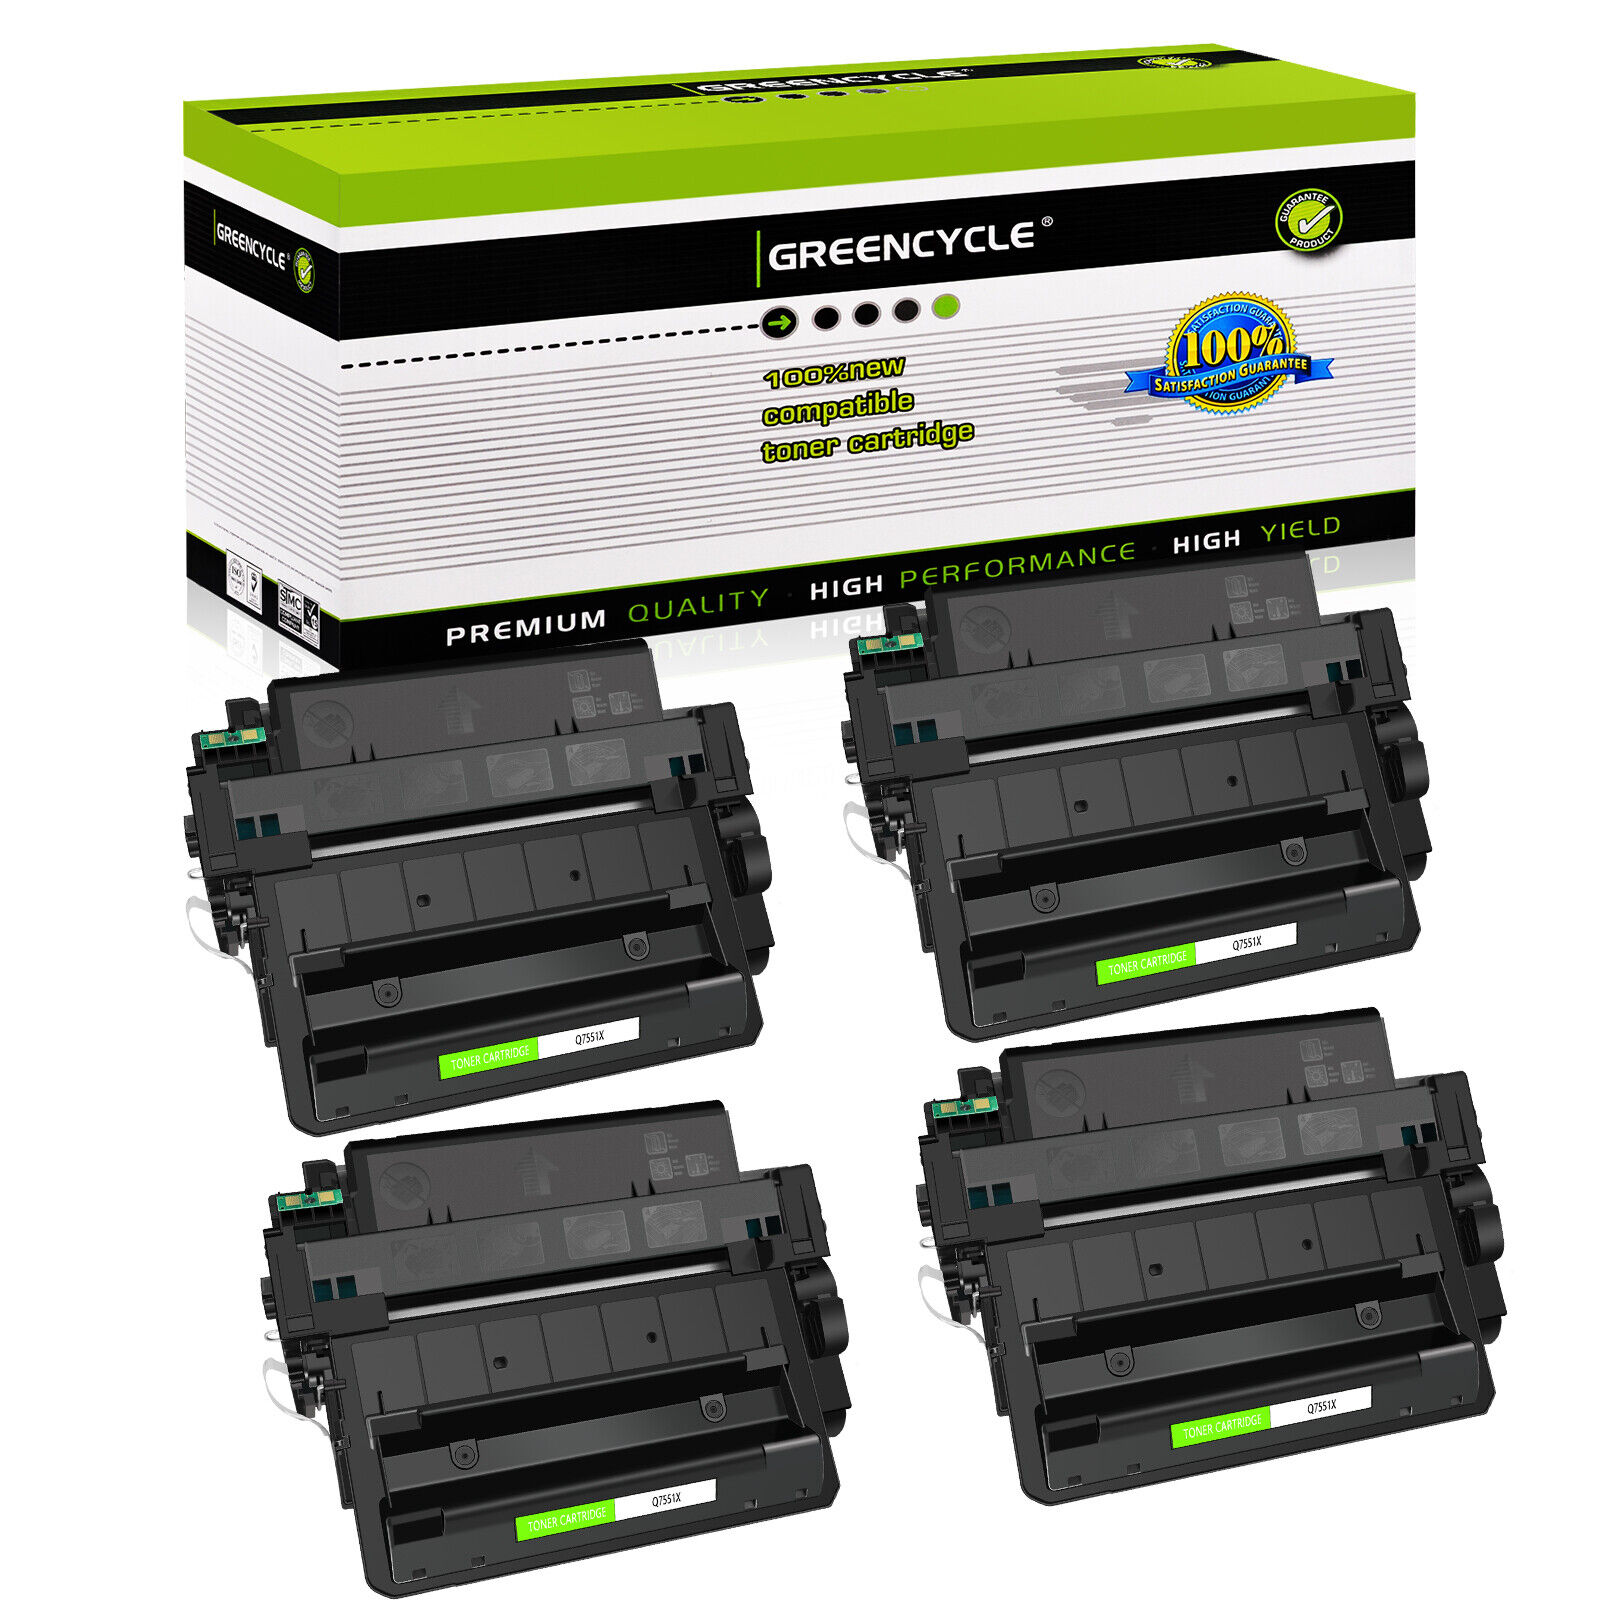 4 Pack Toner Cartridge fit for HP Q7551X 51X Laserjet P3005 P3005N M3027 Printer